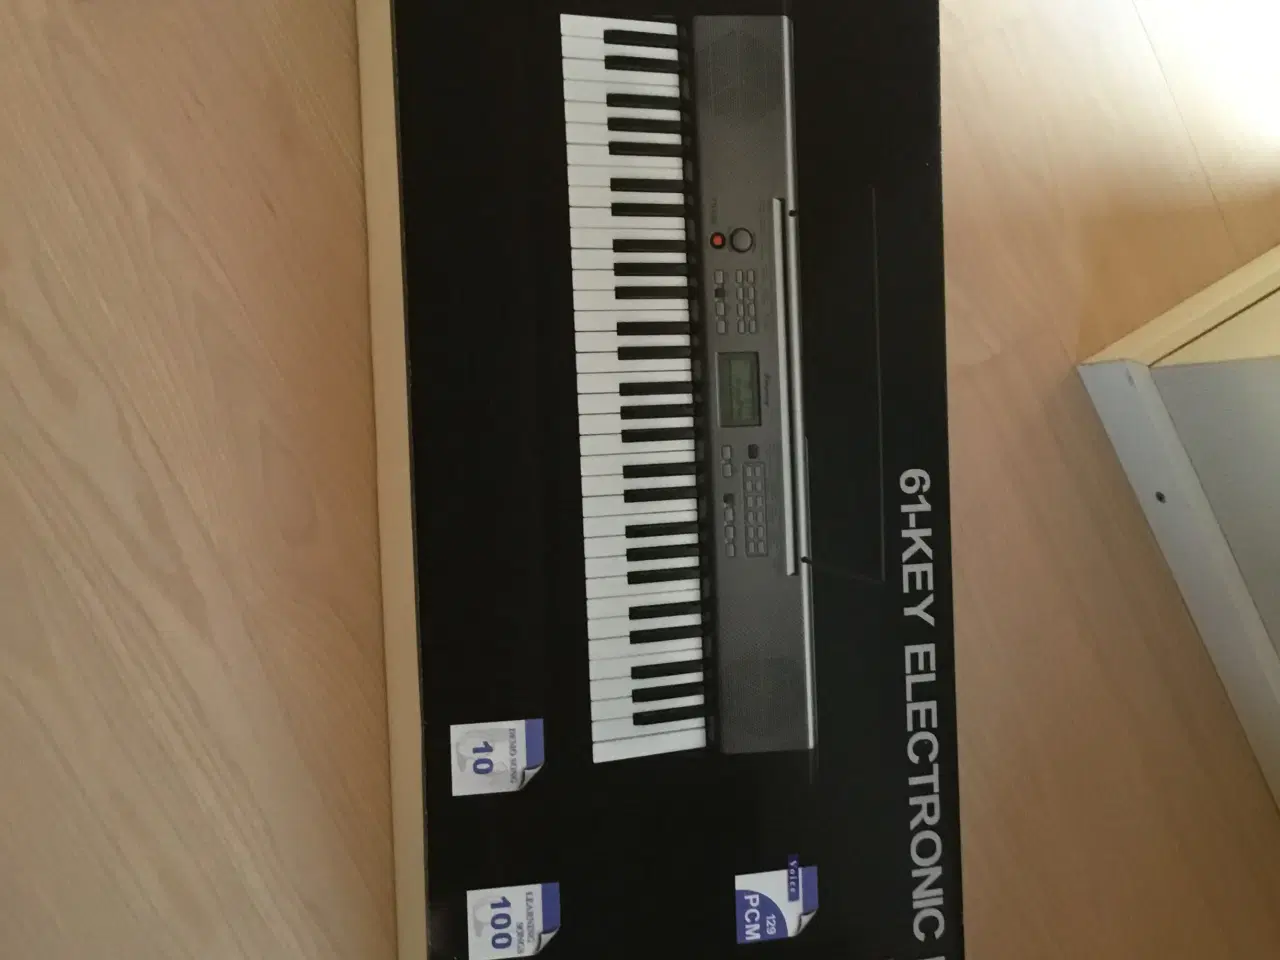 Billede 1 - Keyboard